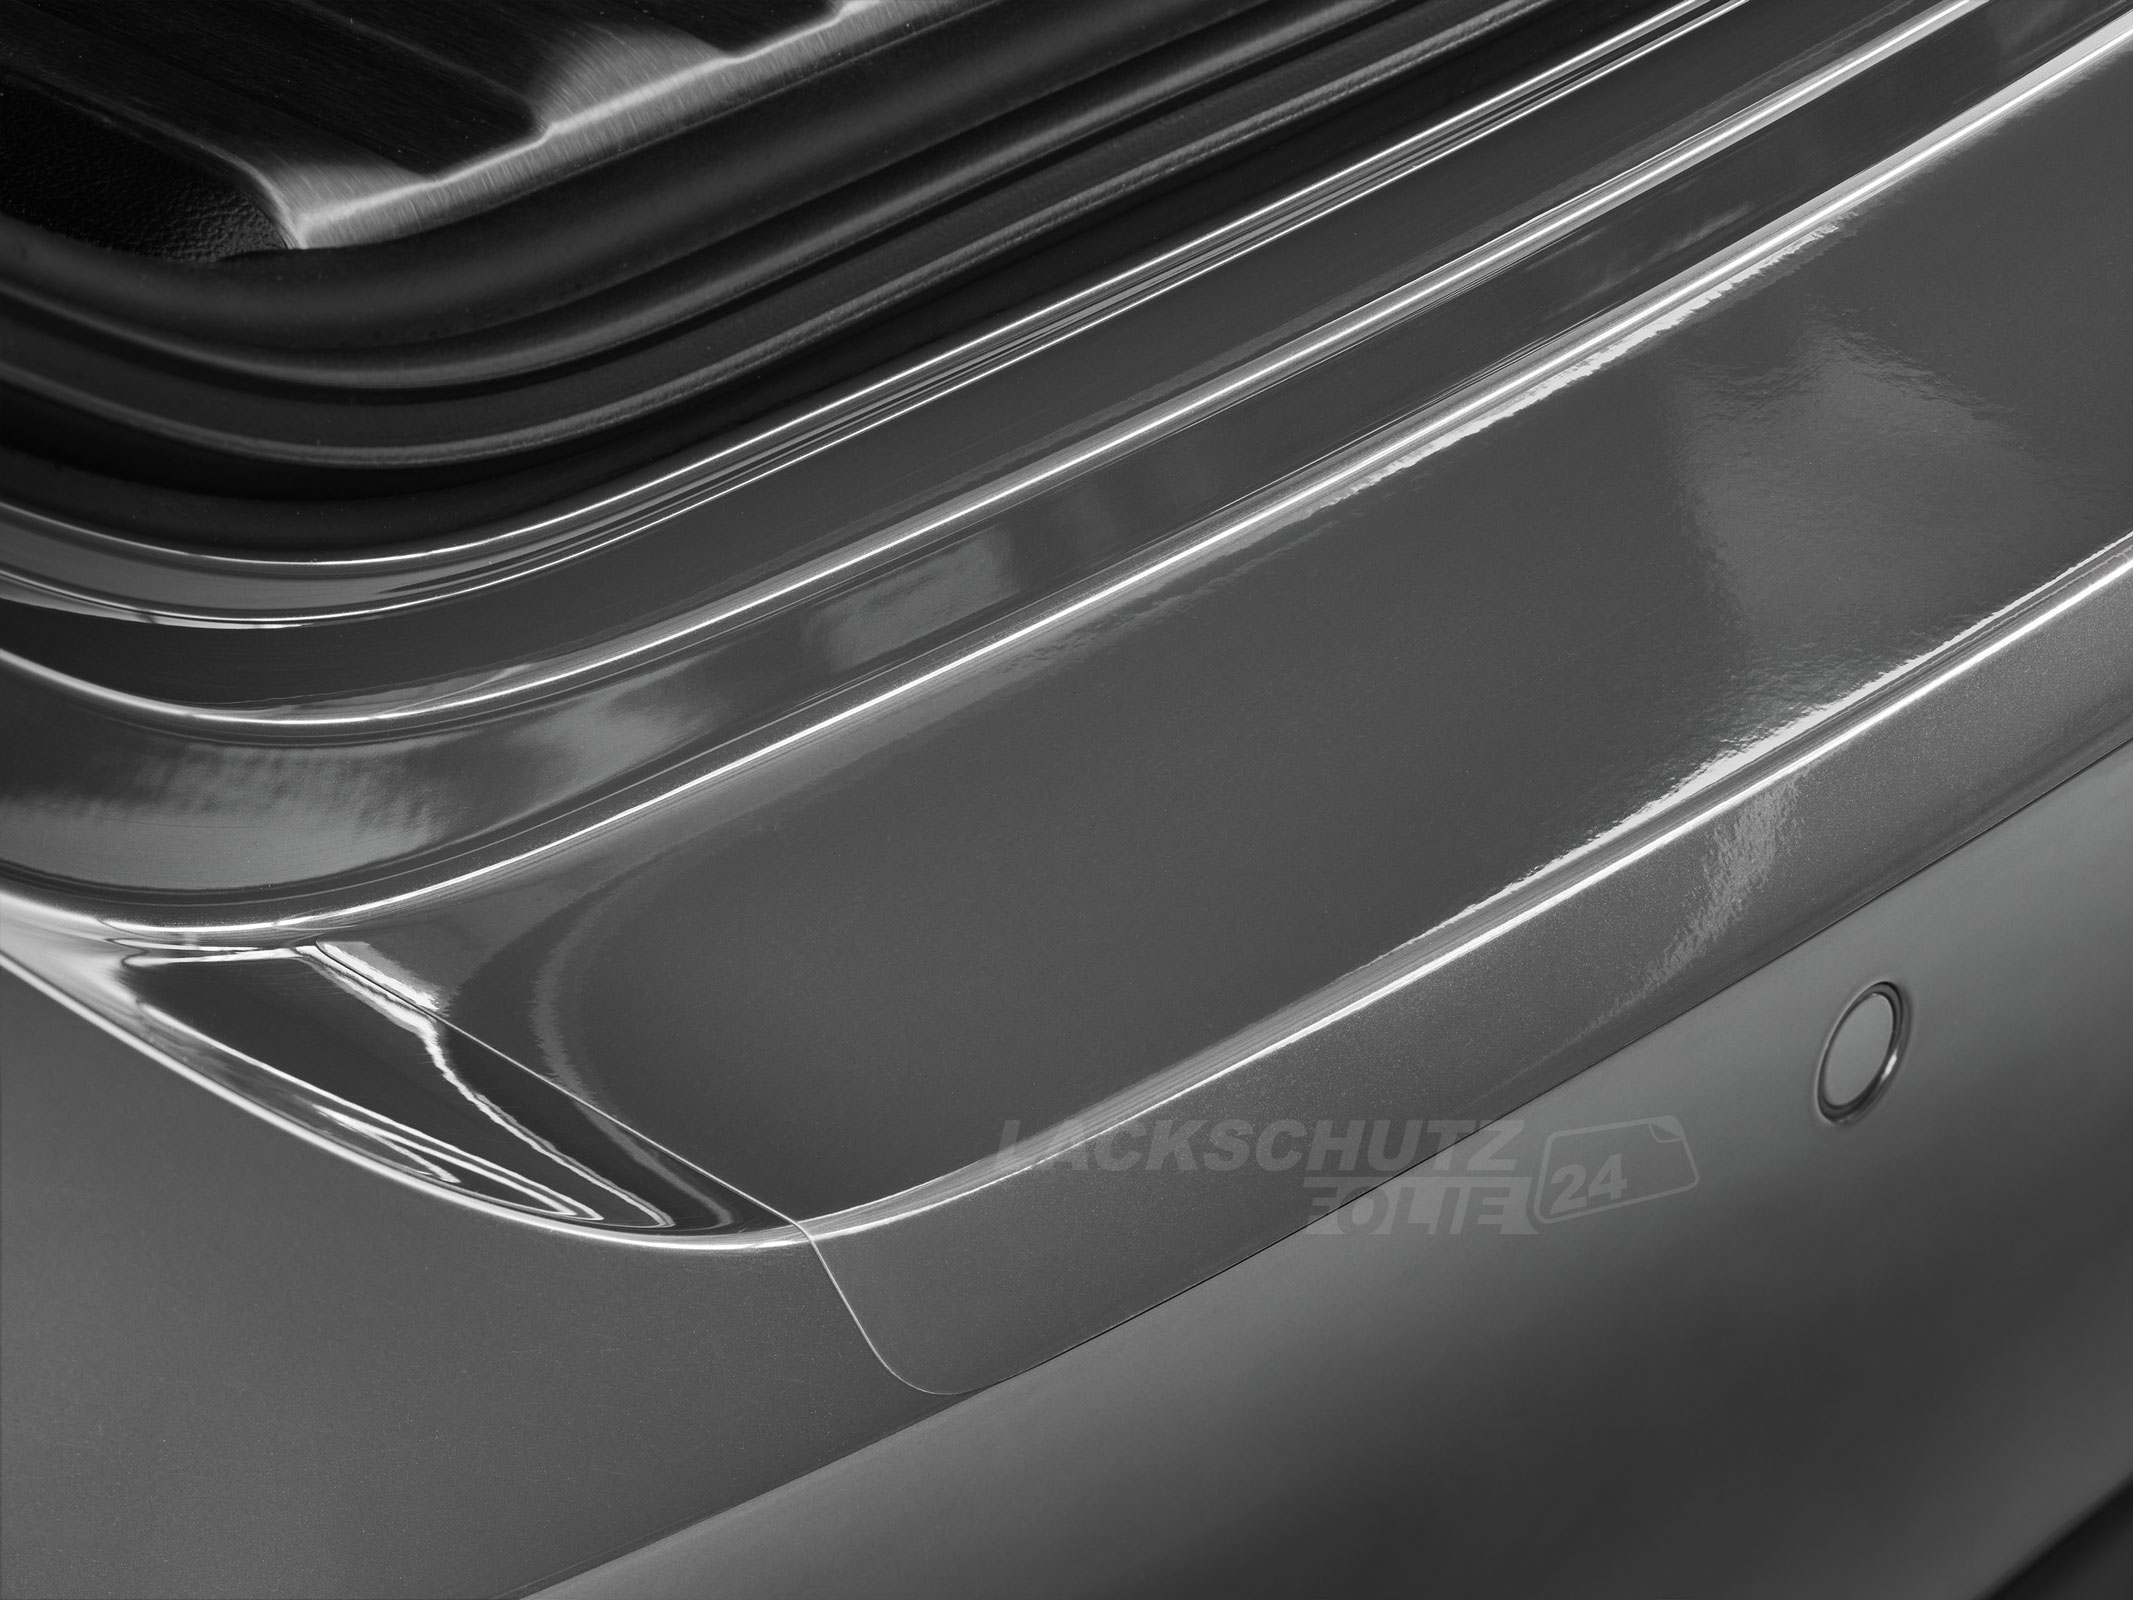 Ladekantenschutzfolie - Transparent Glatt Hochglänzend 240 µm stark für Audi Q7 (II) Typ 4M, ab BJ 2015